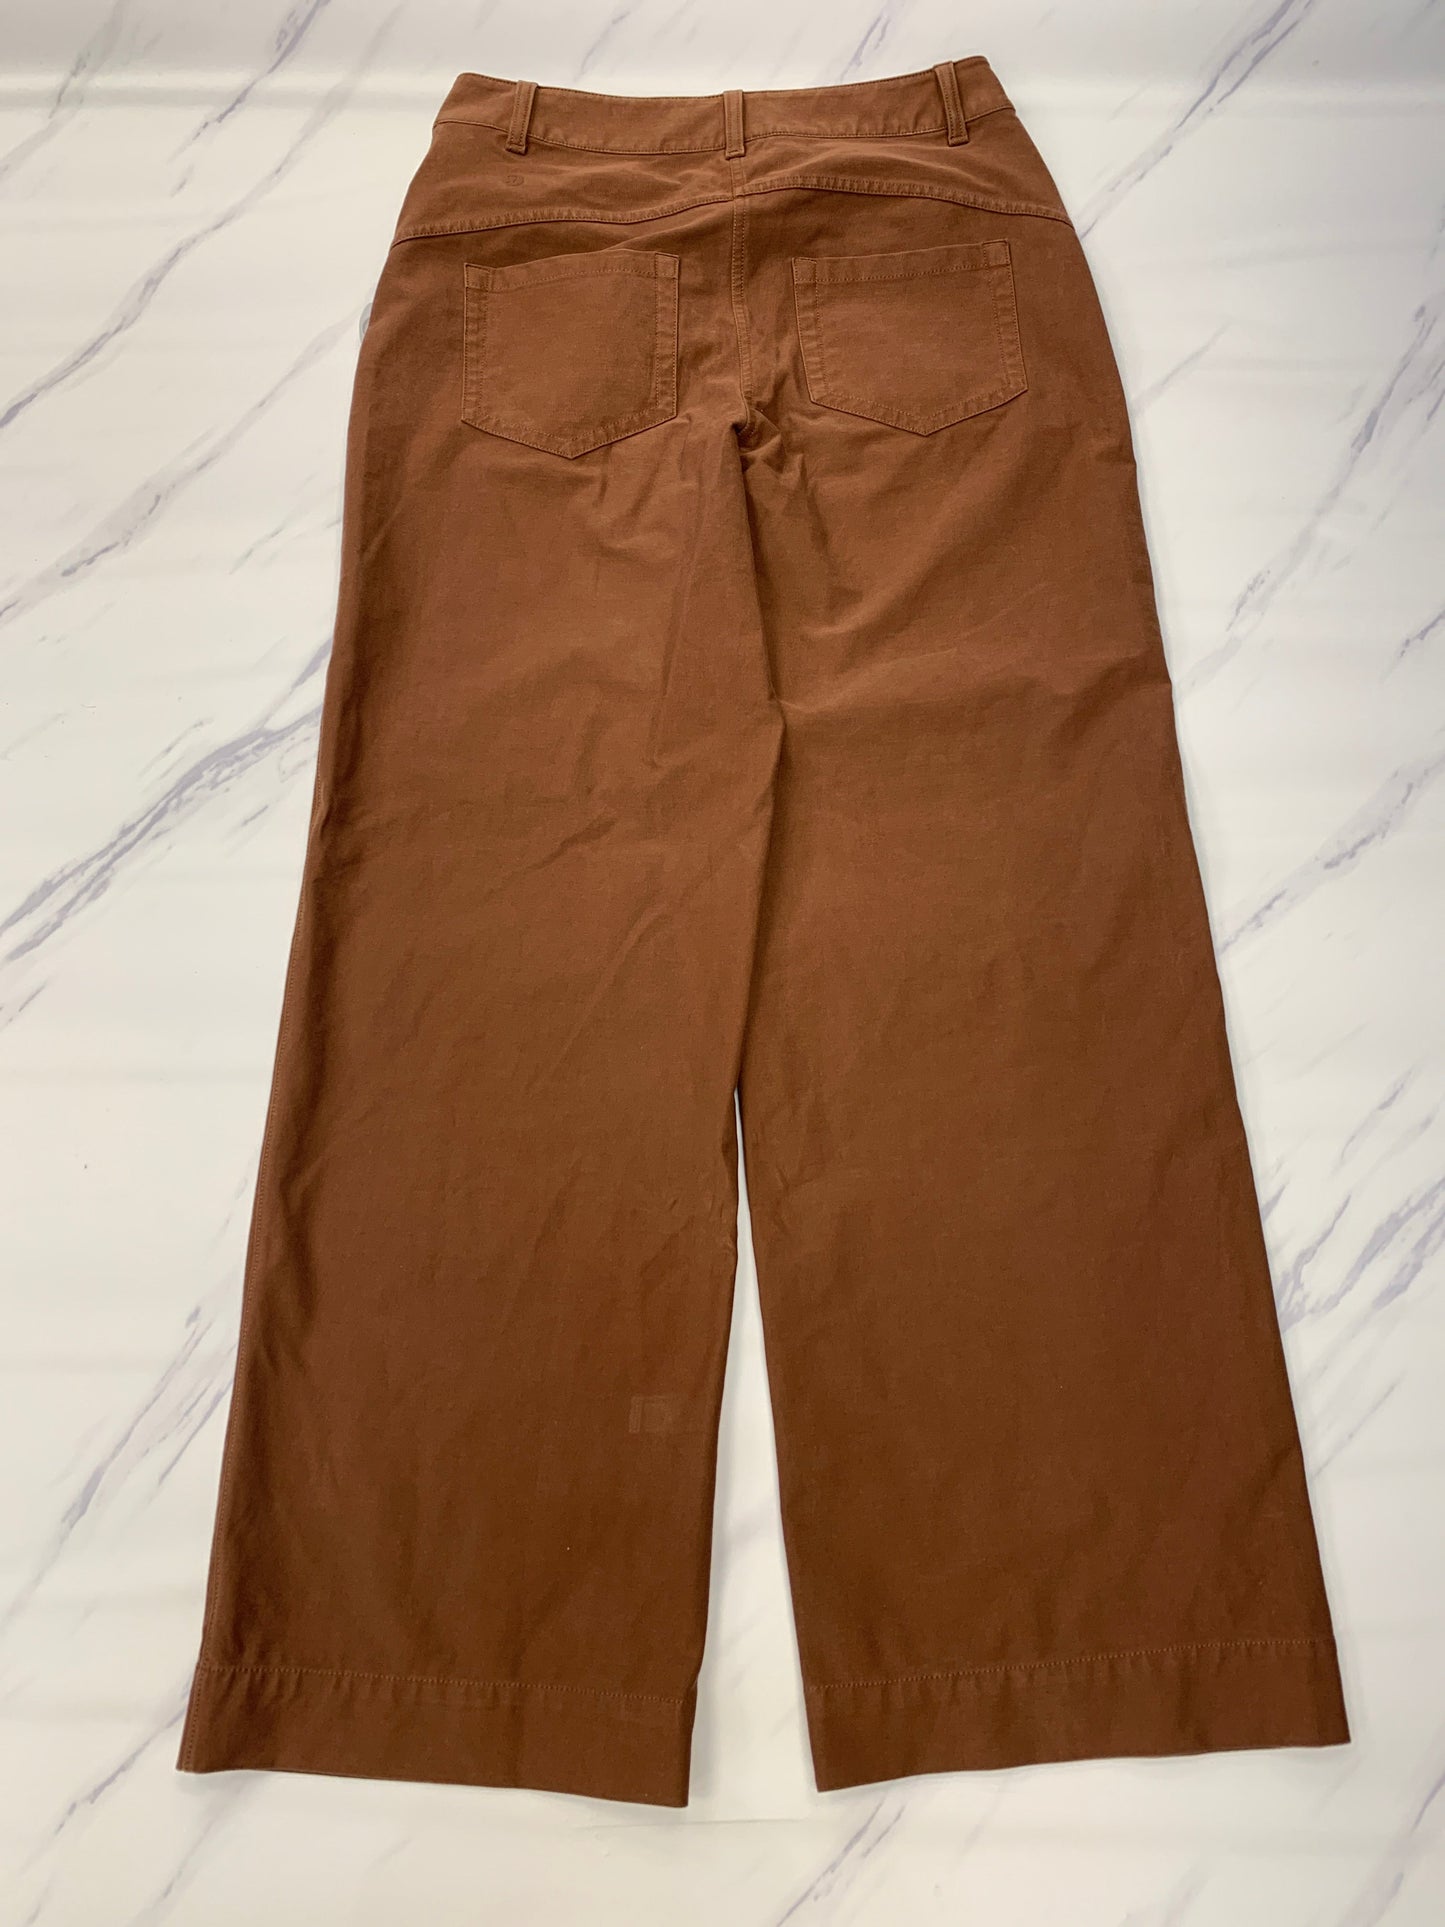 Brown Pants Designer Lululemon, Size 6